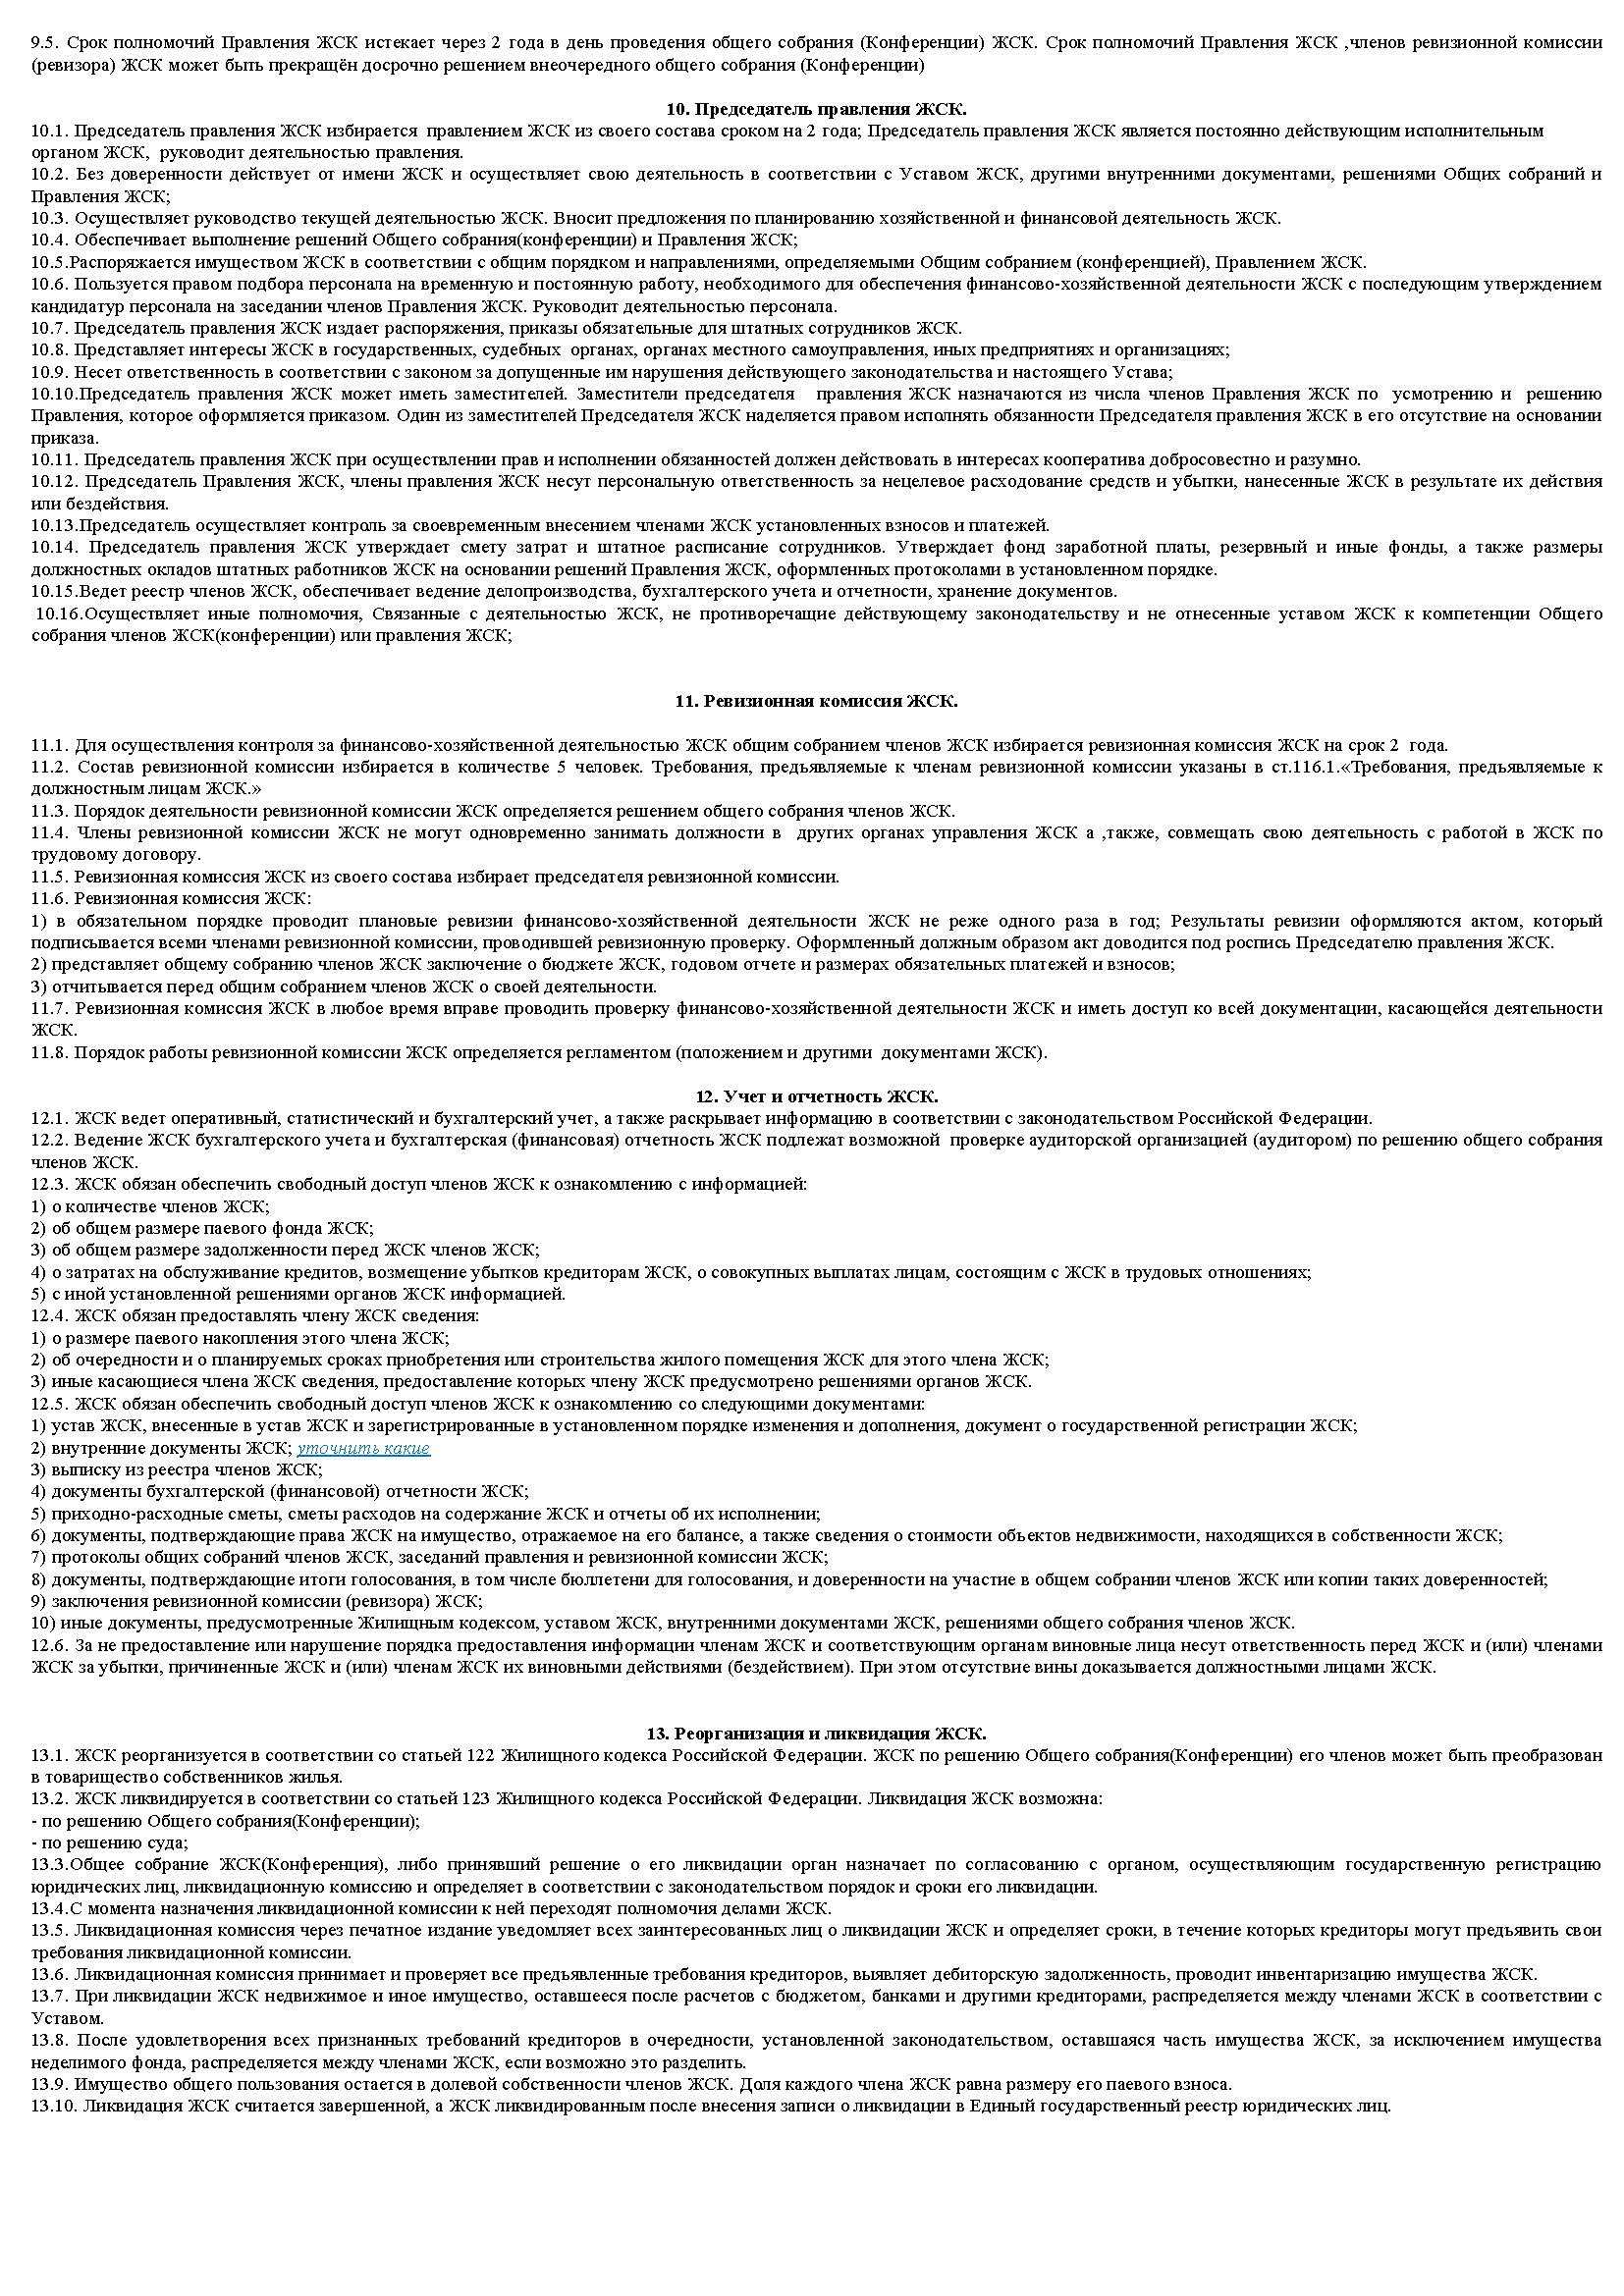 Жилищно-строительные кооперативы (жск): определение, устав, договор :: businessman.ru